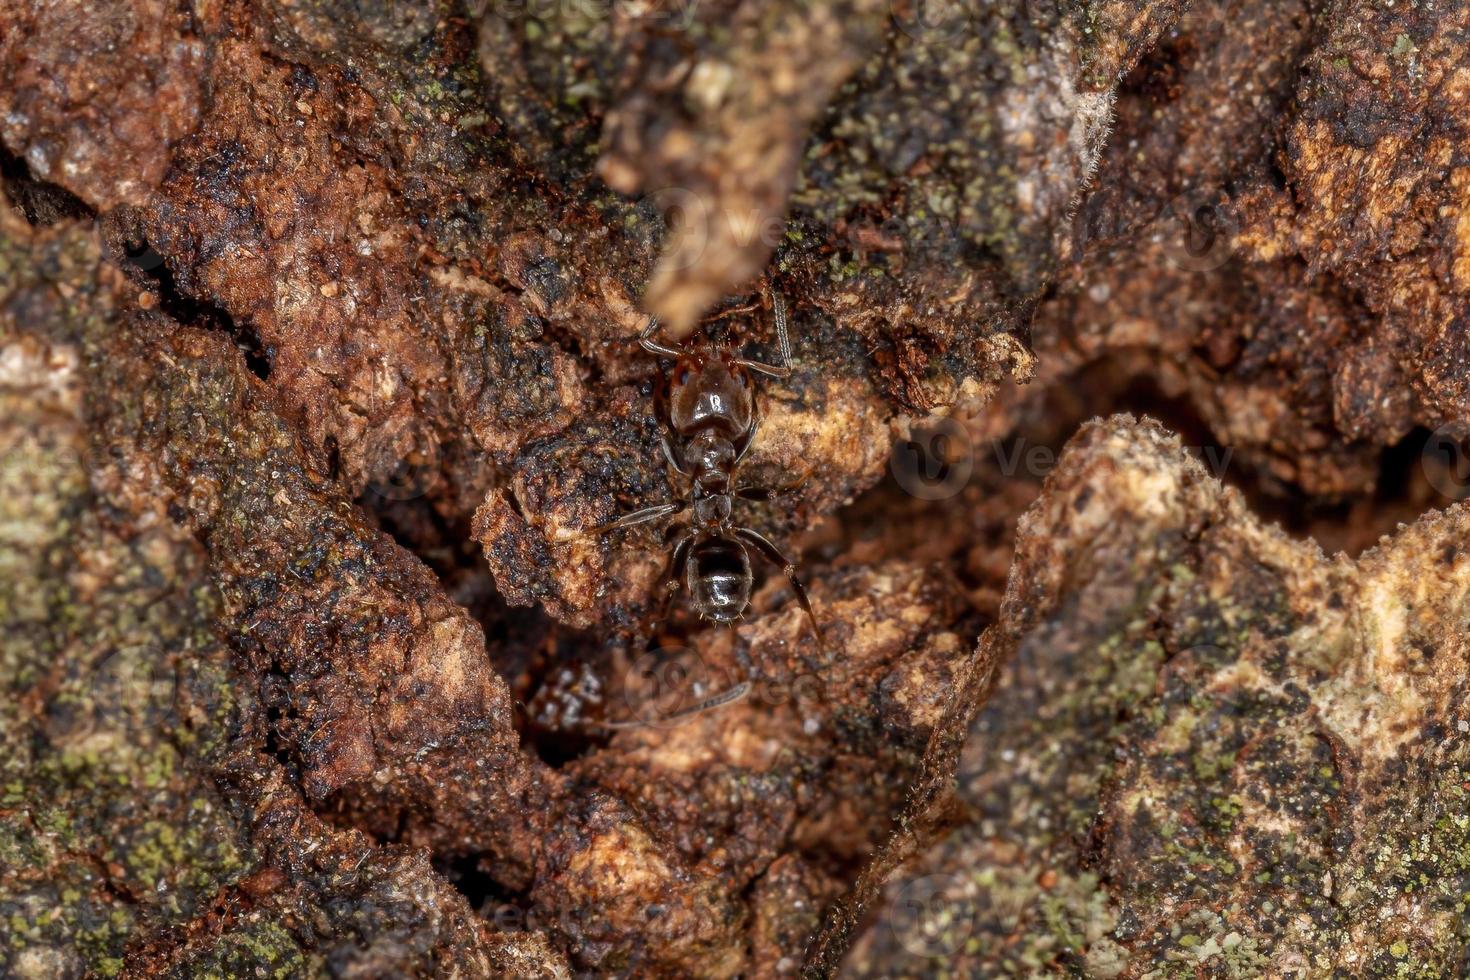 fourmi cecropia adulte photo